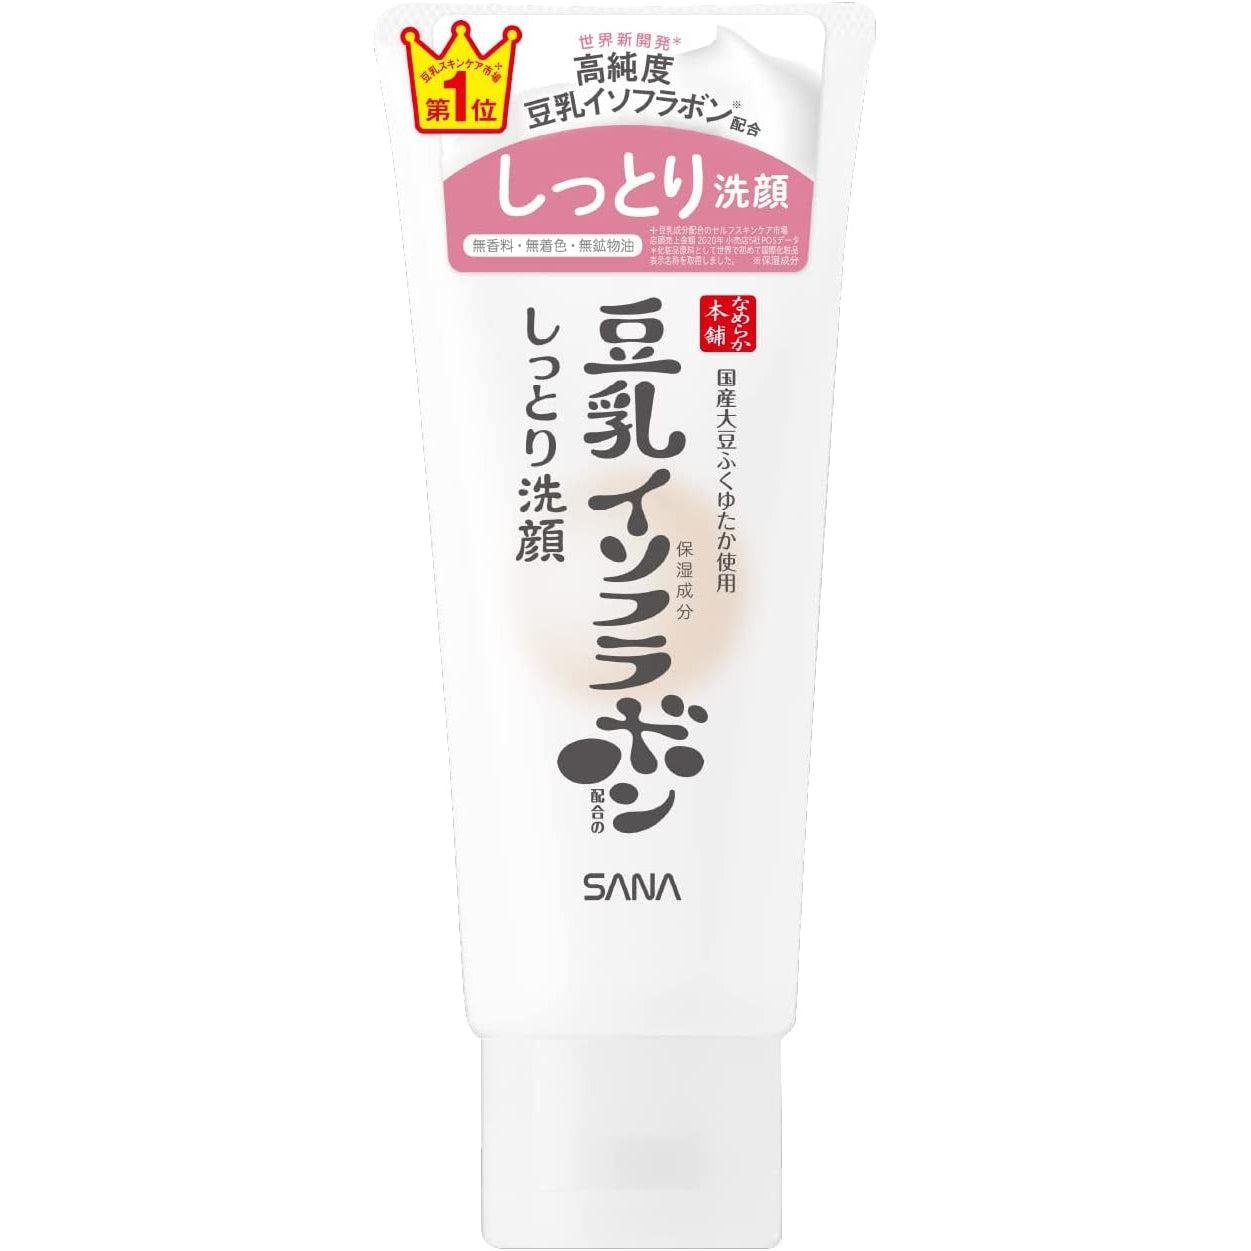 P-1-SNA-SOY-FM-150-Sana Nameraka Honpo Soy Milk Isoflavone Foaming Cleanser for Dry Skin 150g.jpg